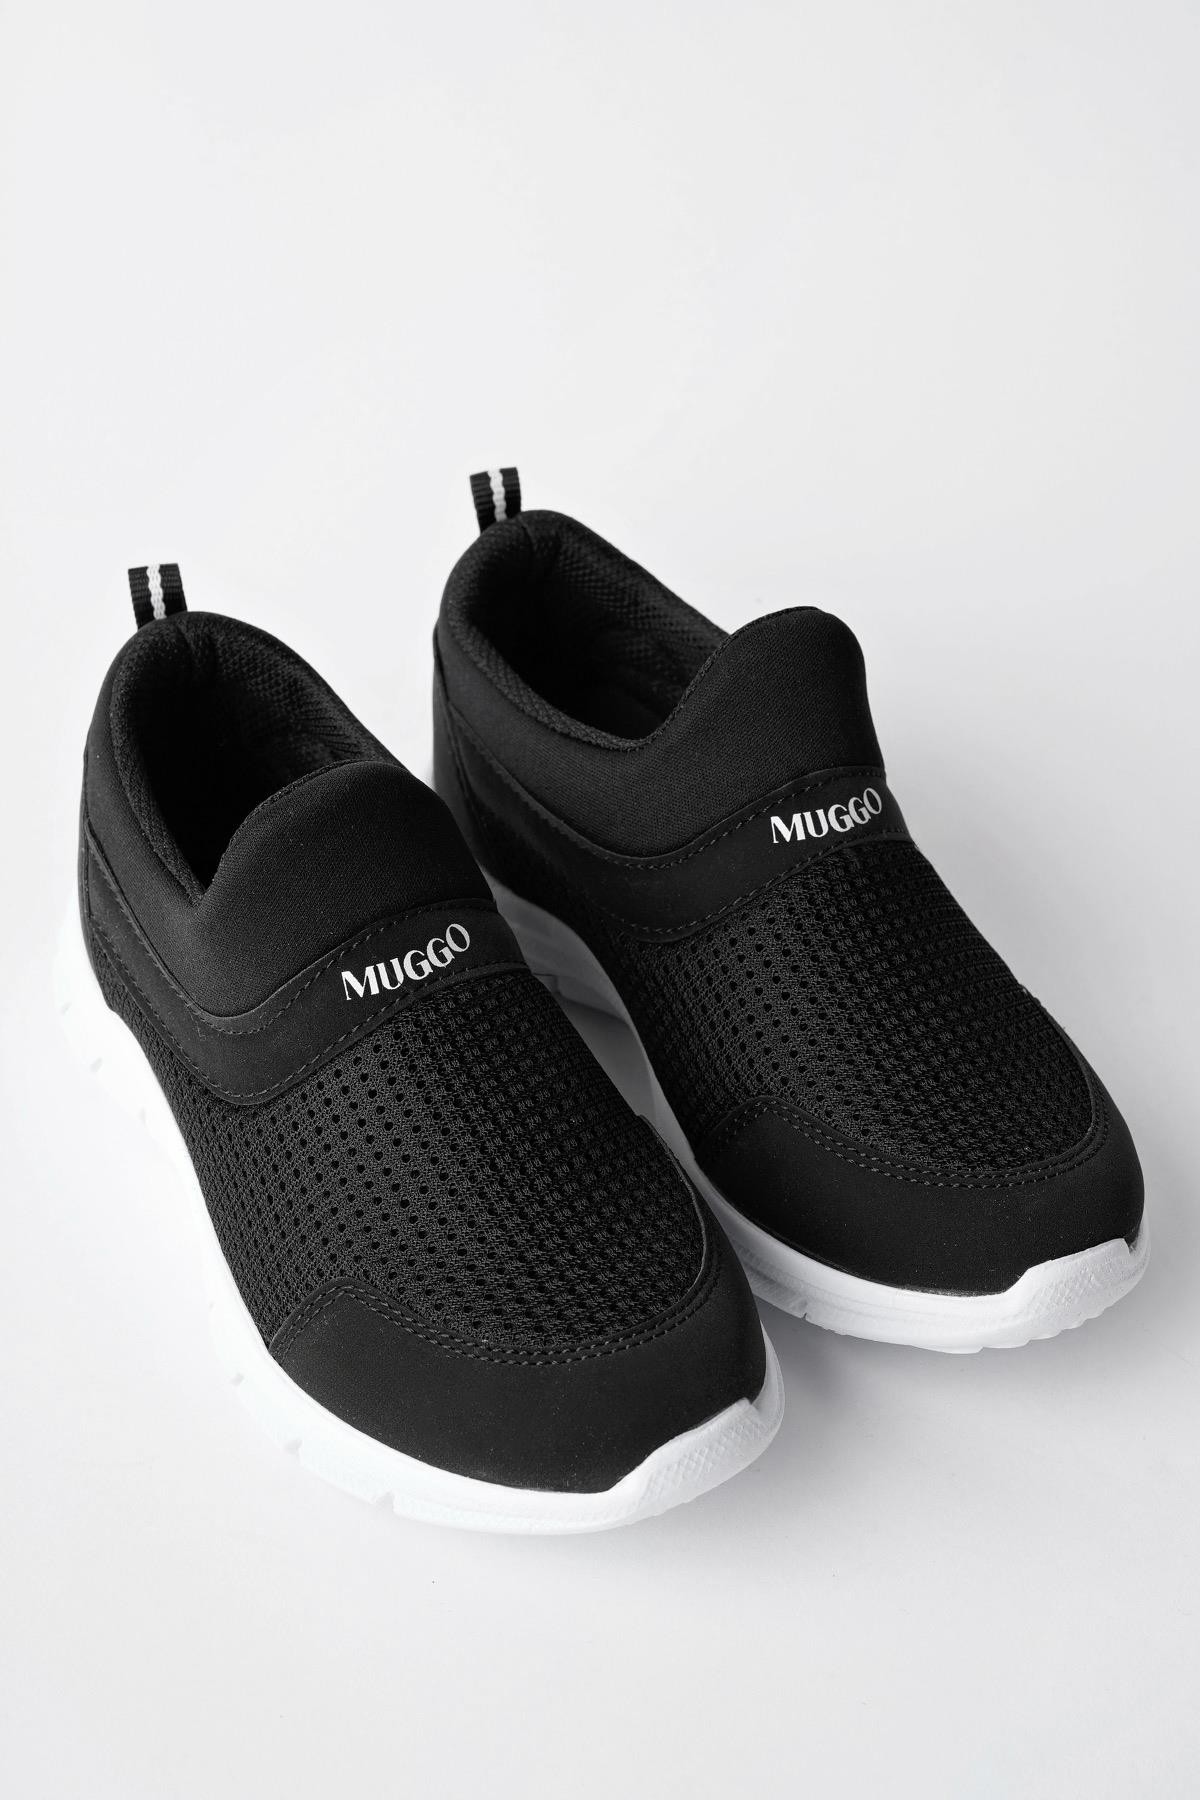 Muggo PİCO Garantili  Unisex Çocuk Bağcıksız Rahat Esnek Günlük Sneaker Spor Ayakkabı